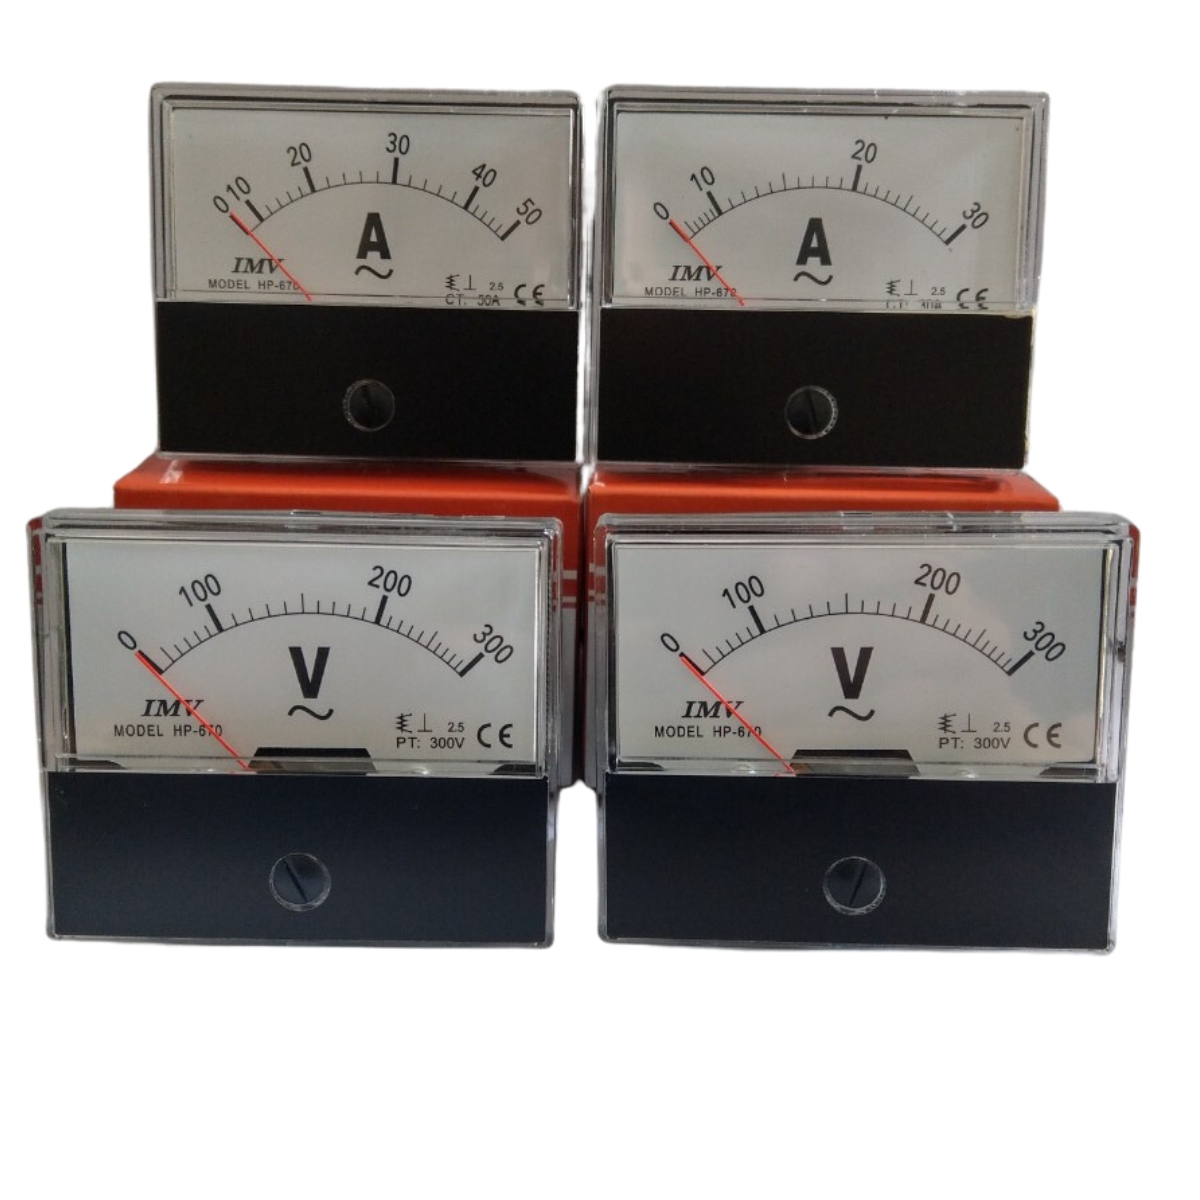 Đồng hồ tủ điện HP-670 vôn, ampere 60x70 đo điện áp, dòng điện trực tiếp tiêu chuẩn Đài Loan tín hiệu analoge dạng kim